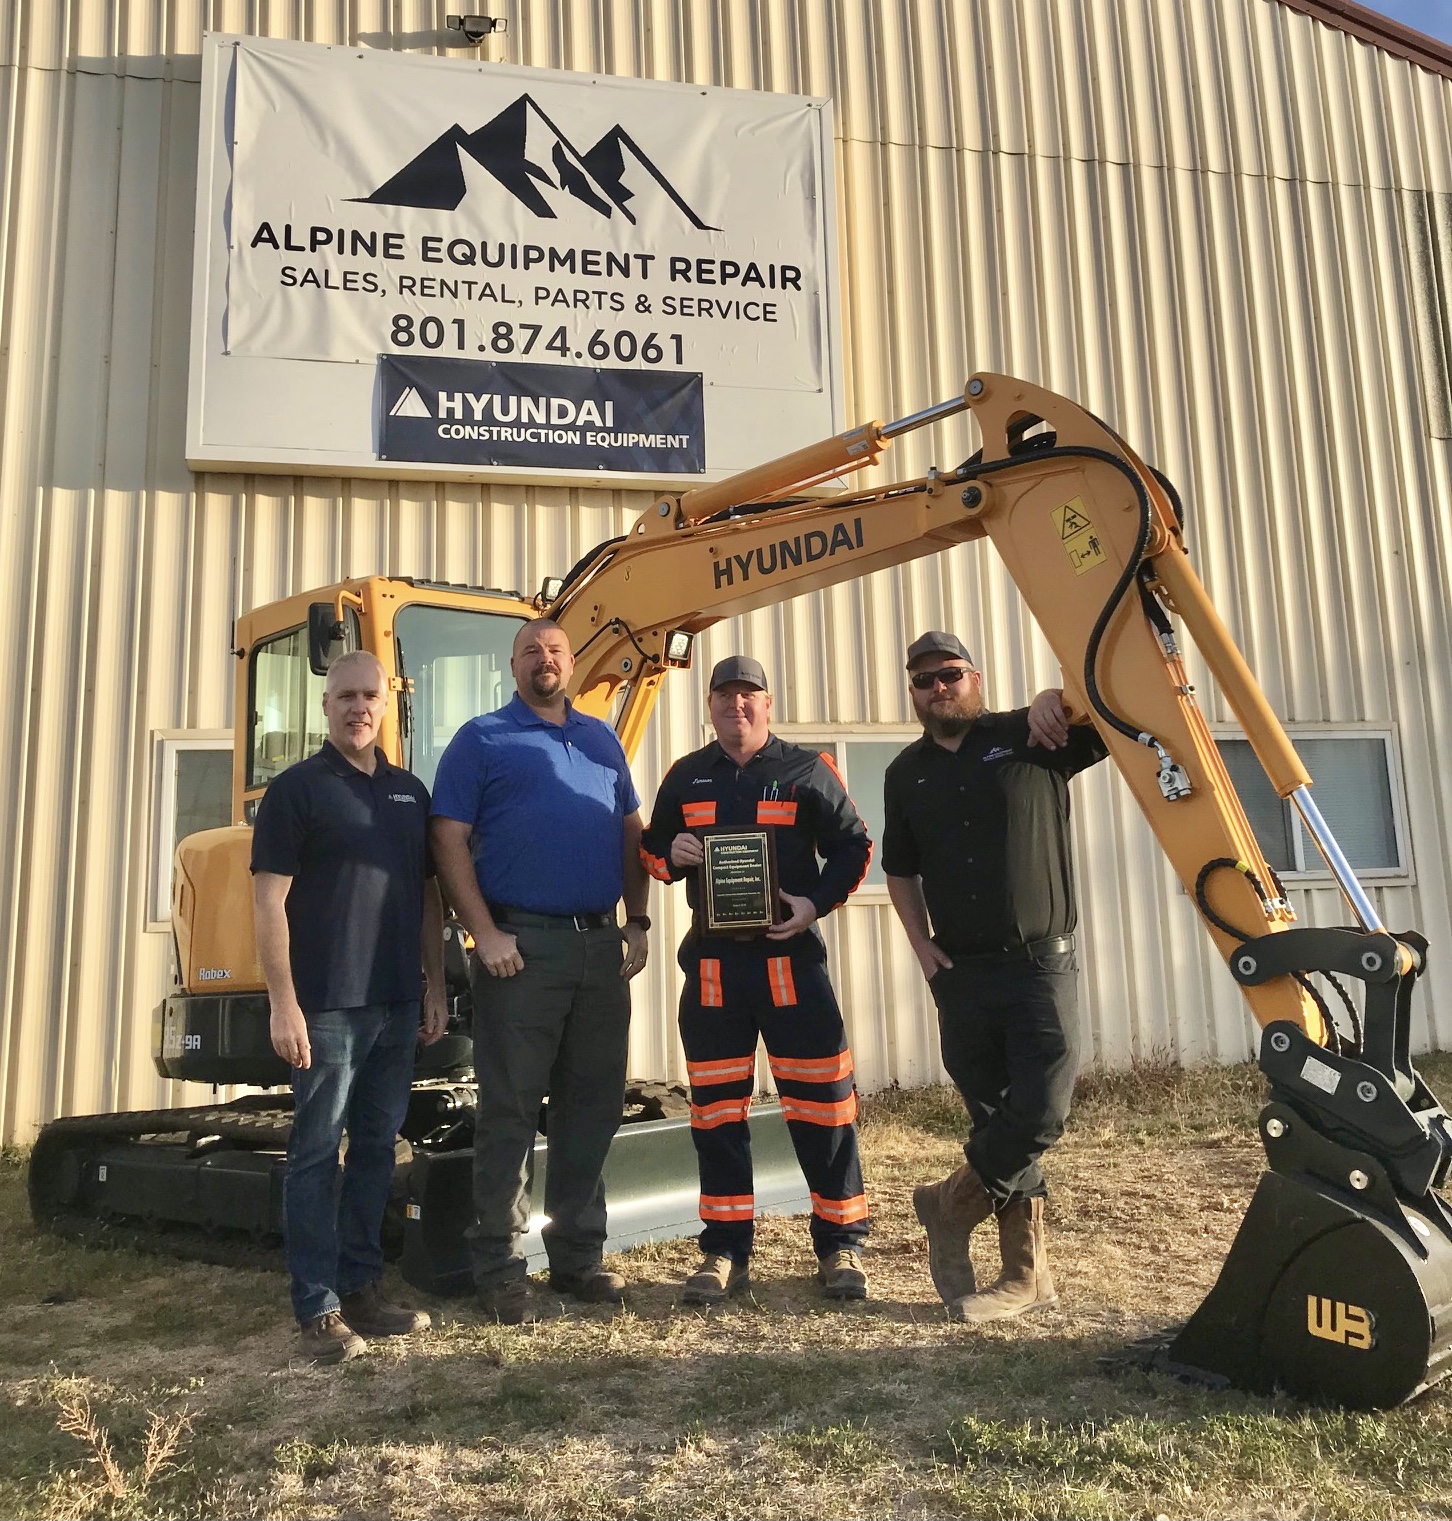 alpine equipment repair receives new hyundai dealer plaque